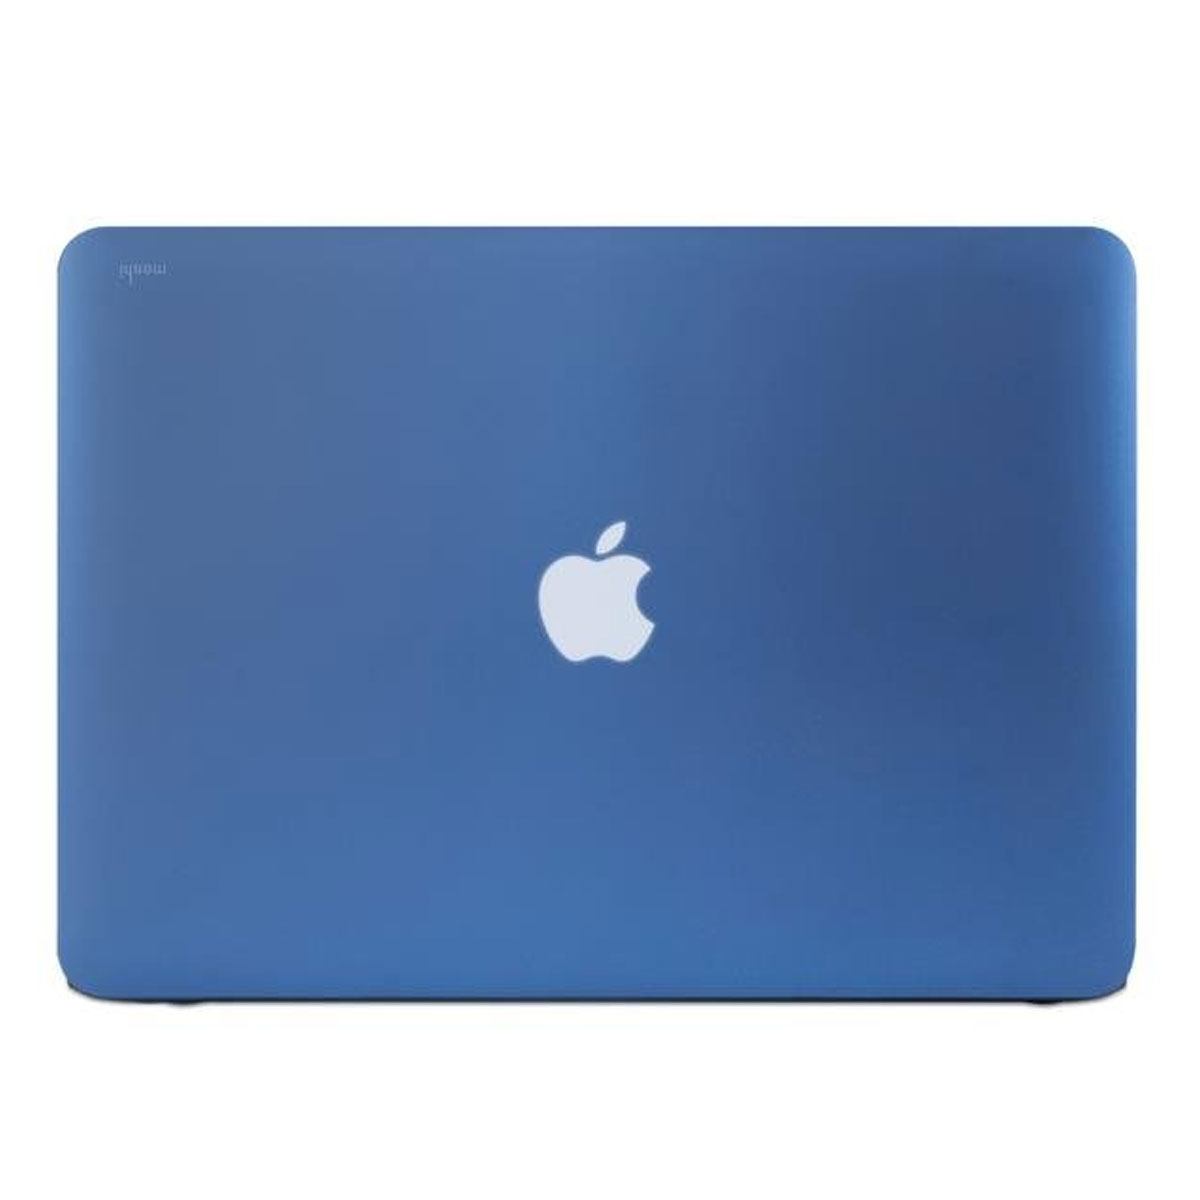 Moshi - iGlaze for MacBook Pro 13-inch - Indigo Blue